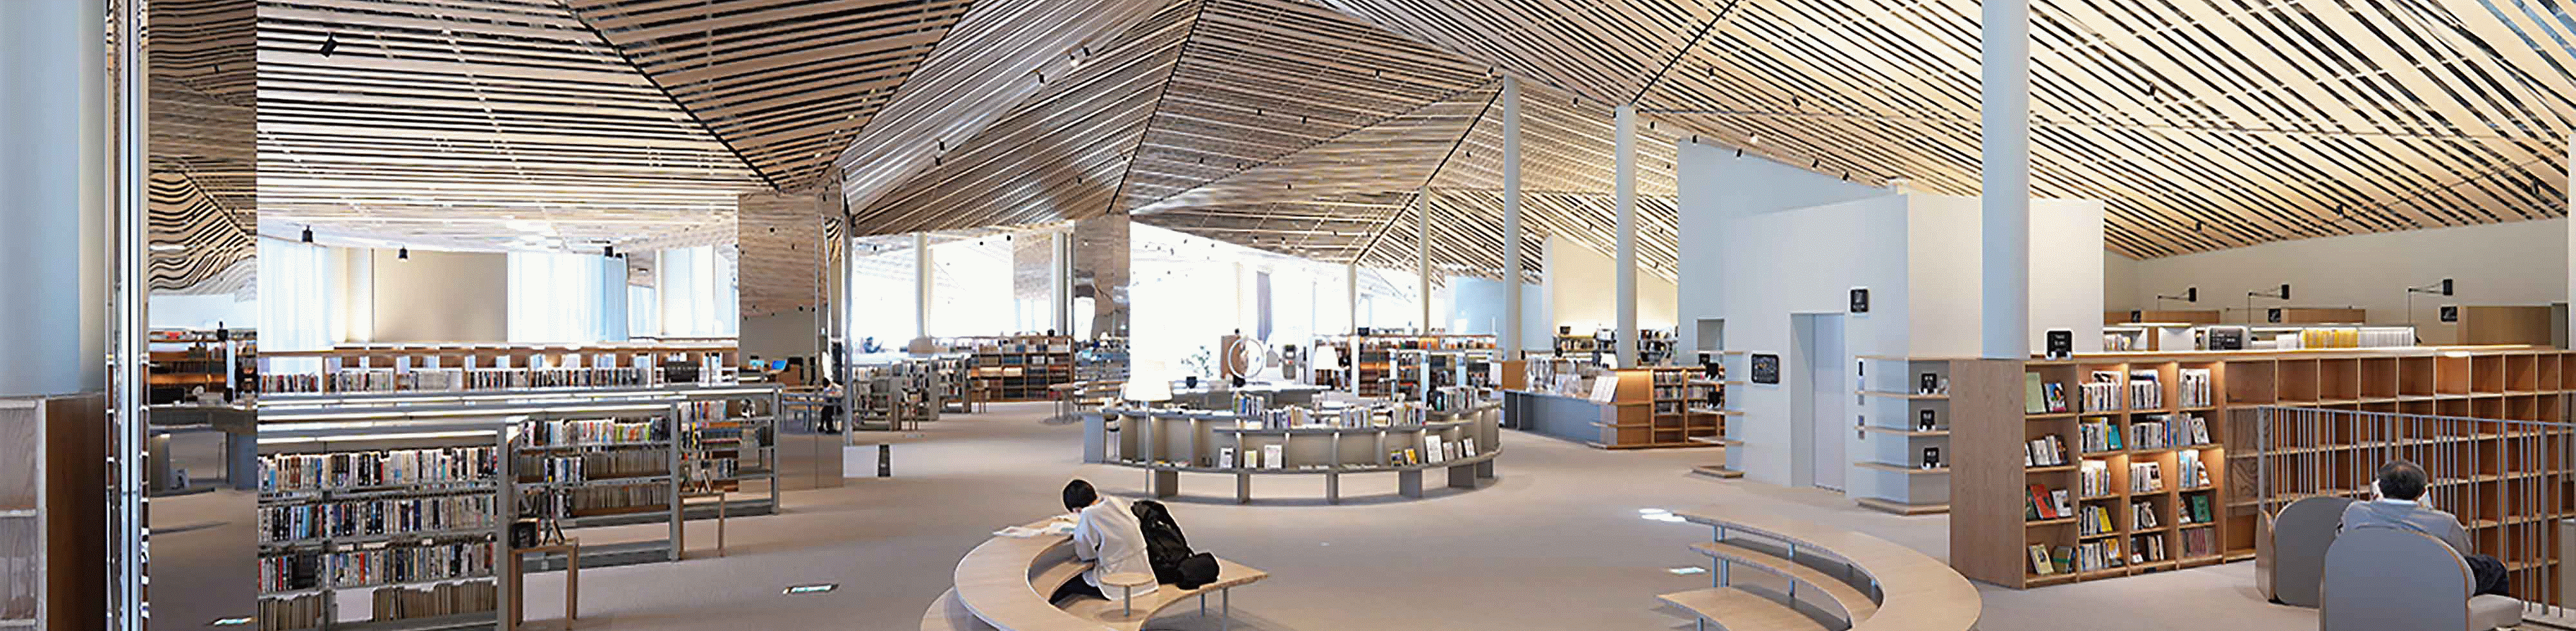 Bild einer Bibliothek mit aufwändigem Design und vielen geraden Holzbalken an der Decke mit guter Auflösung bis zum Bildrand